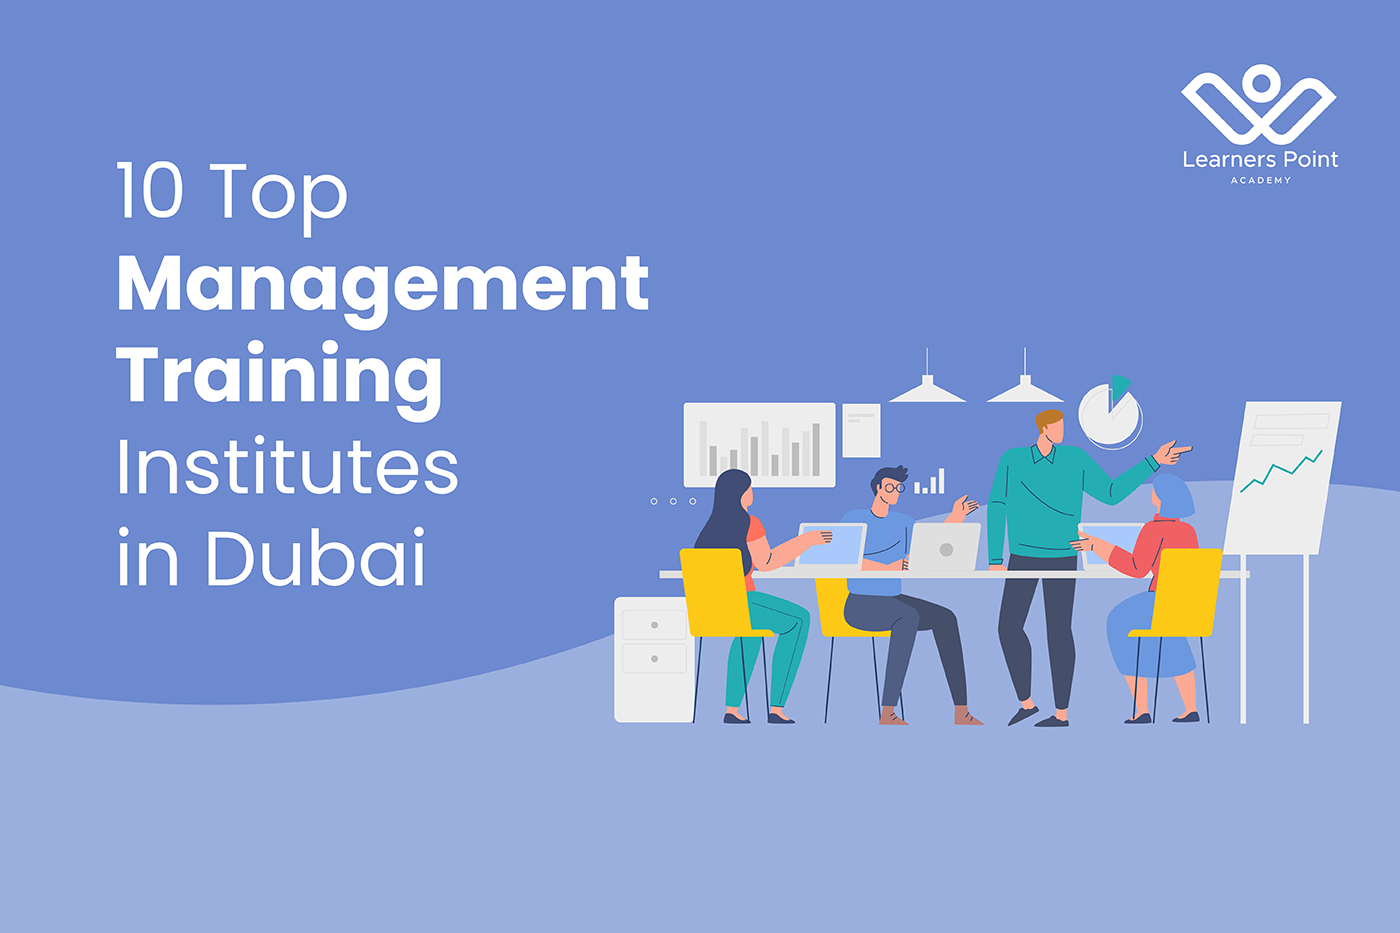 10 Top Management Training Institutes in Dubai